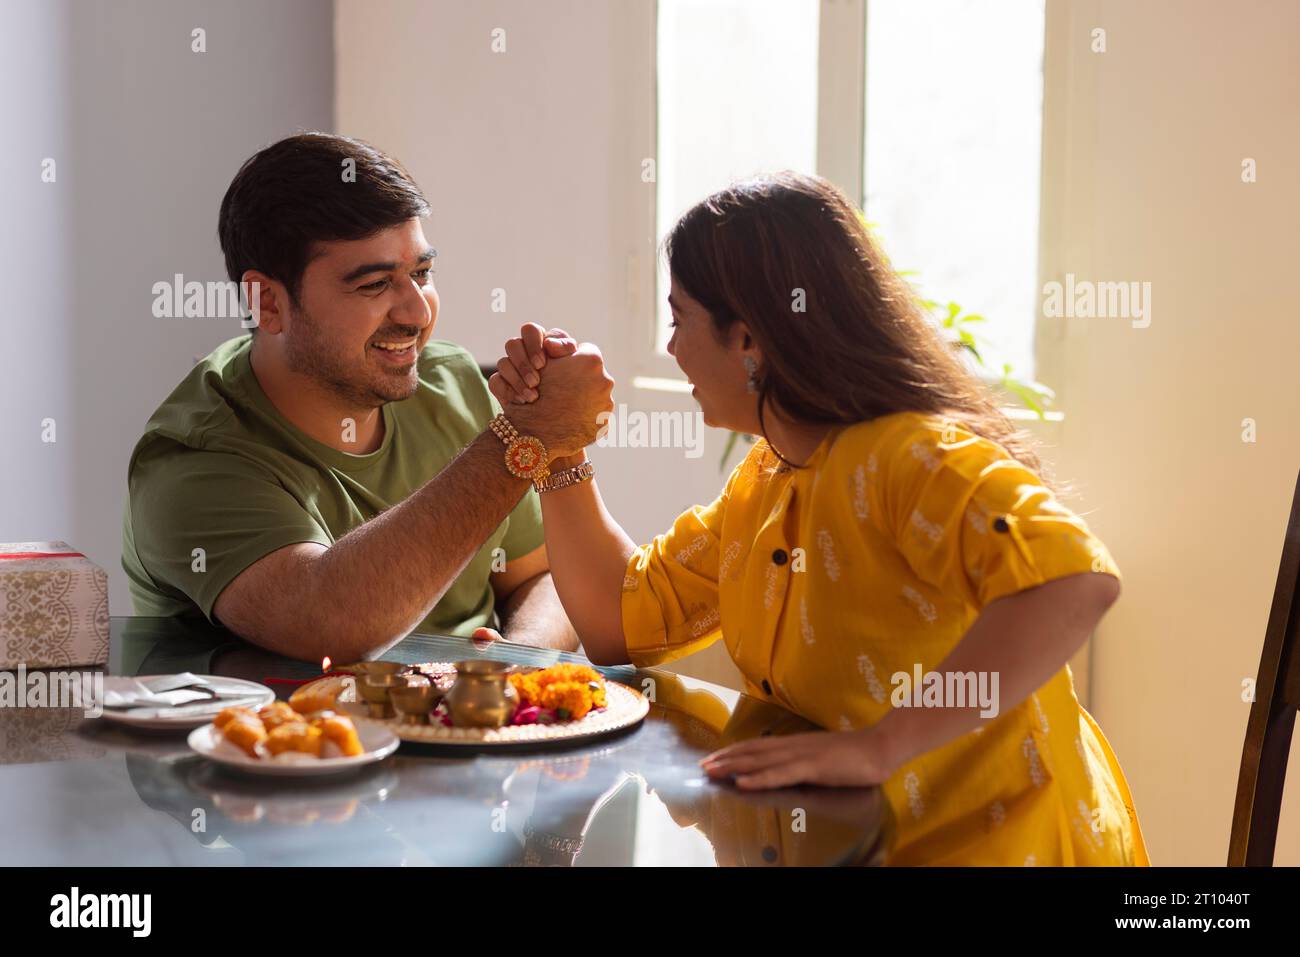 Sibling arm wrestling while celebrating Raksha Bandhan Stock Photo